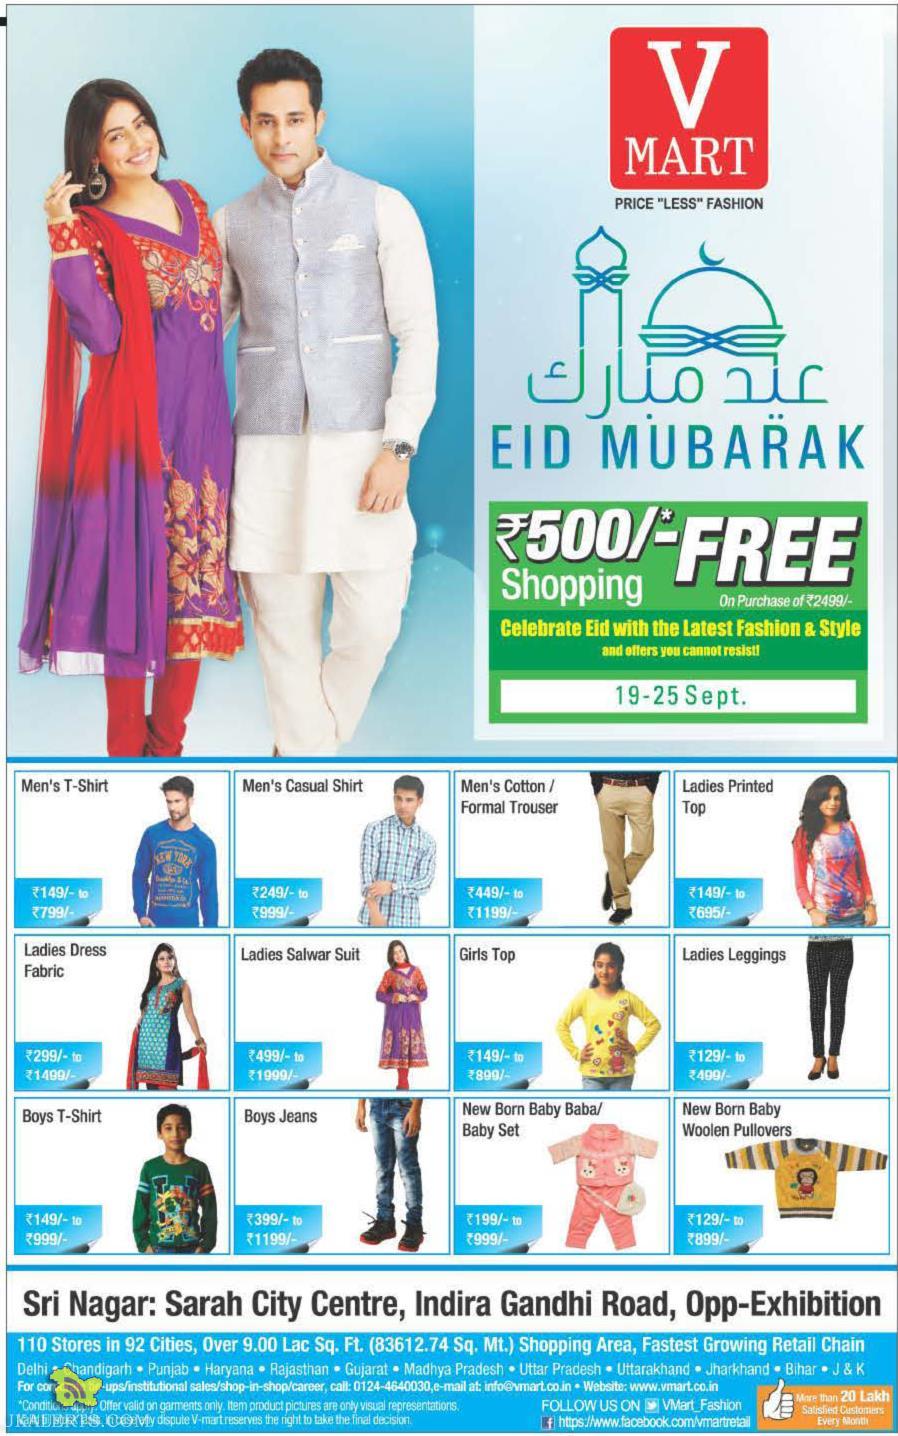 V - Mart Special offer on Eid